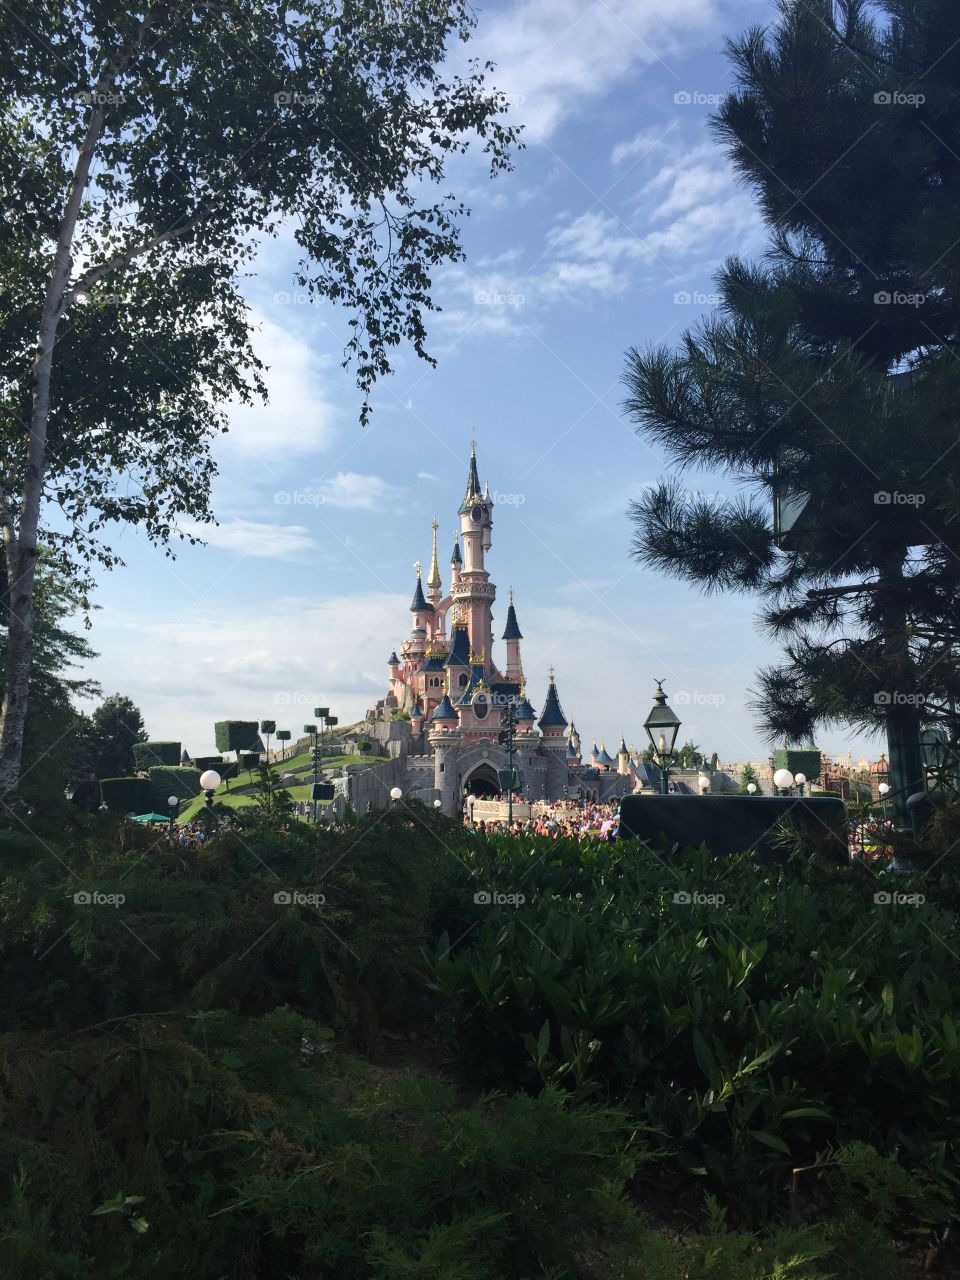 Disneyland Paris - Castle